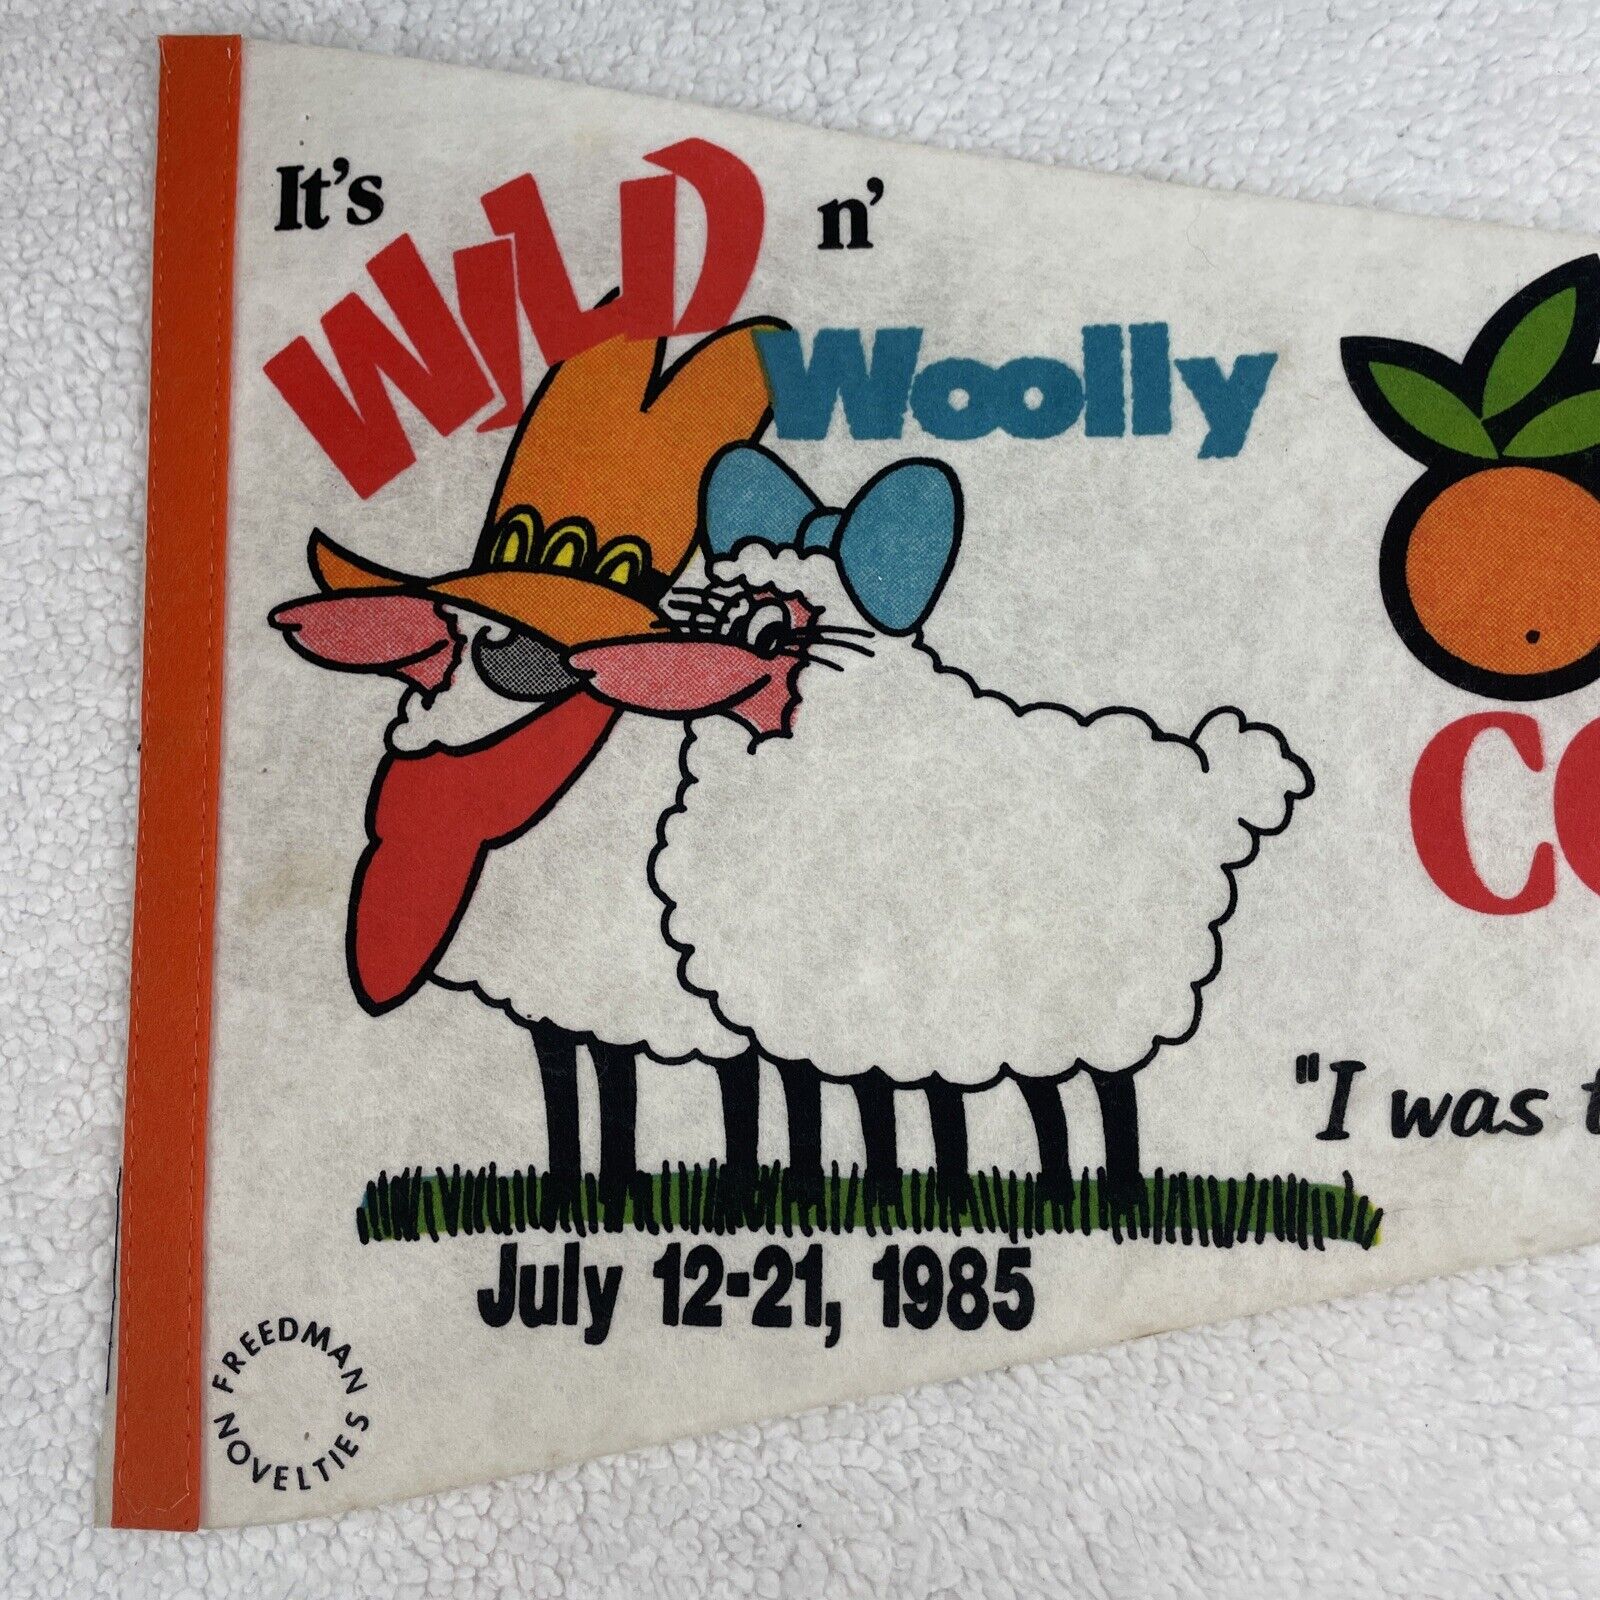 1985 Orange County Fair Pennant Wild n\' Woolly Freedman Novelties Vintage *READ*